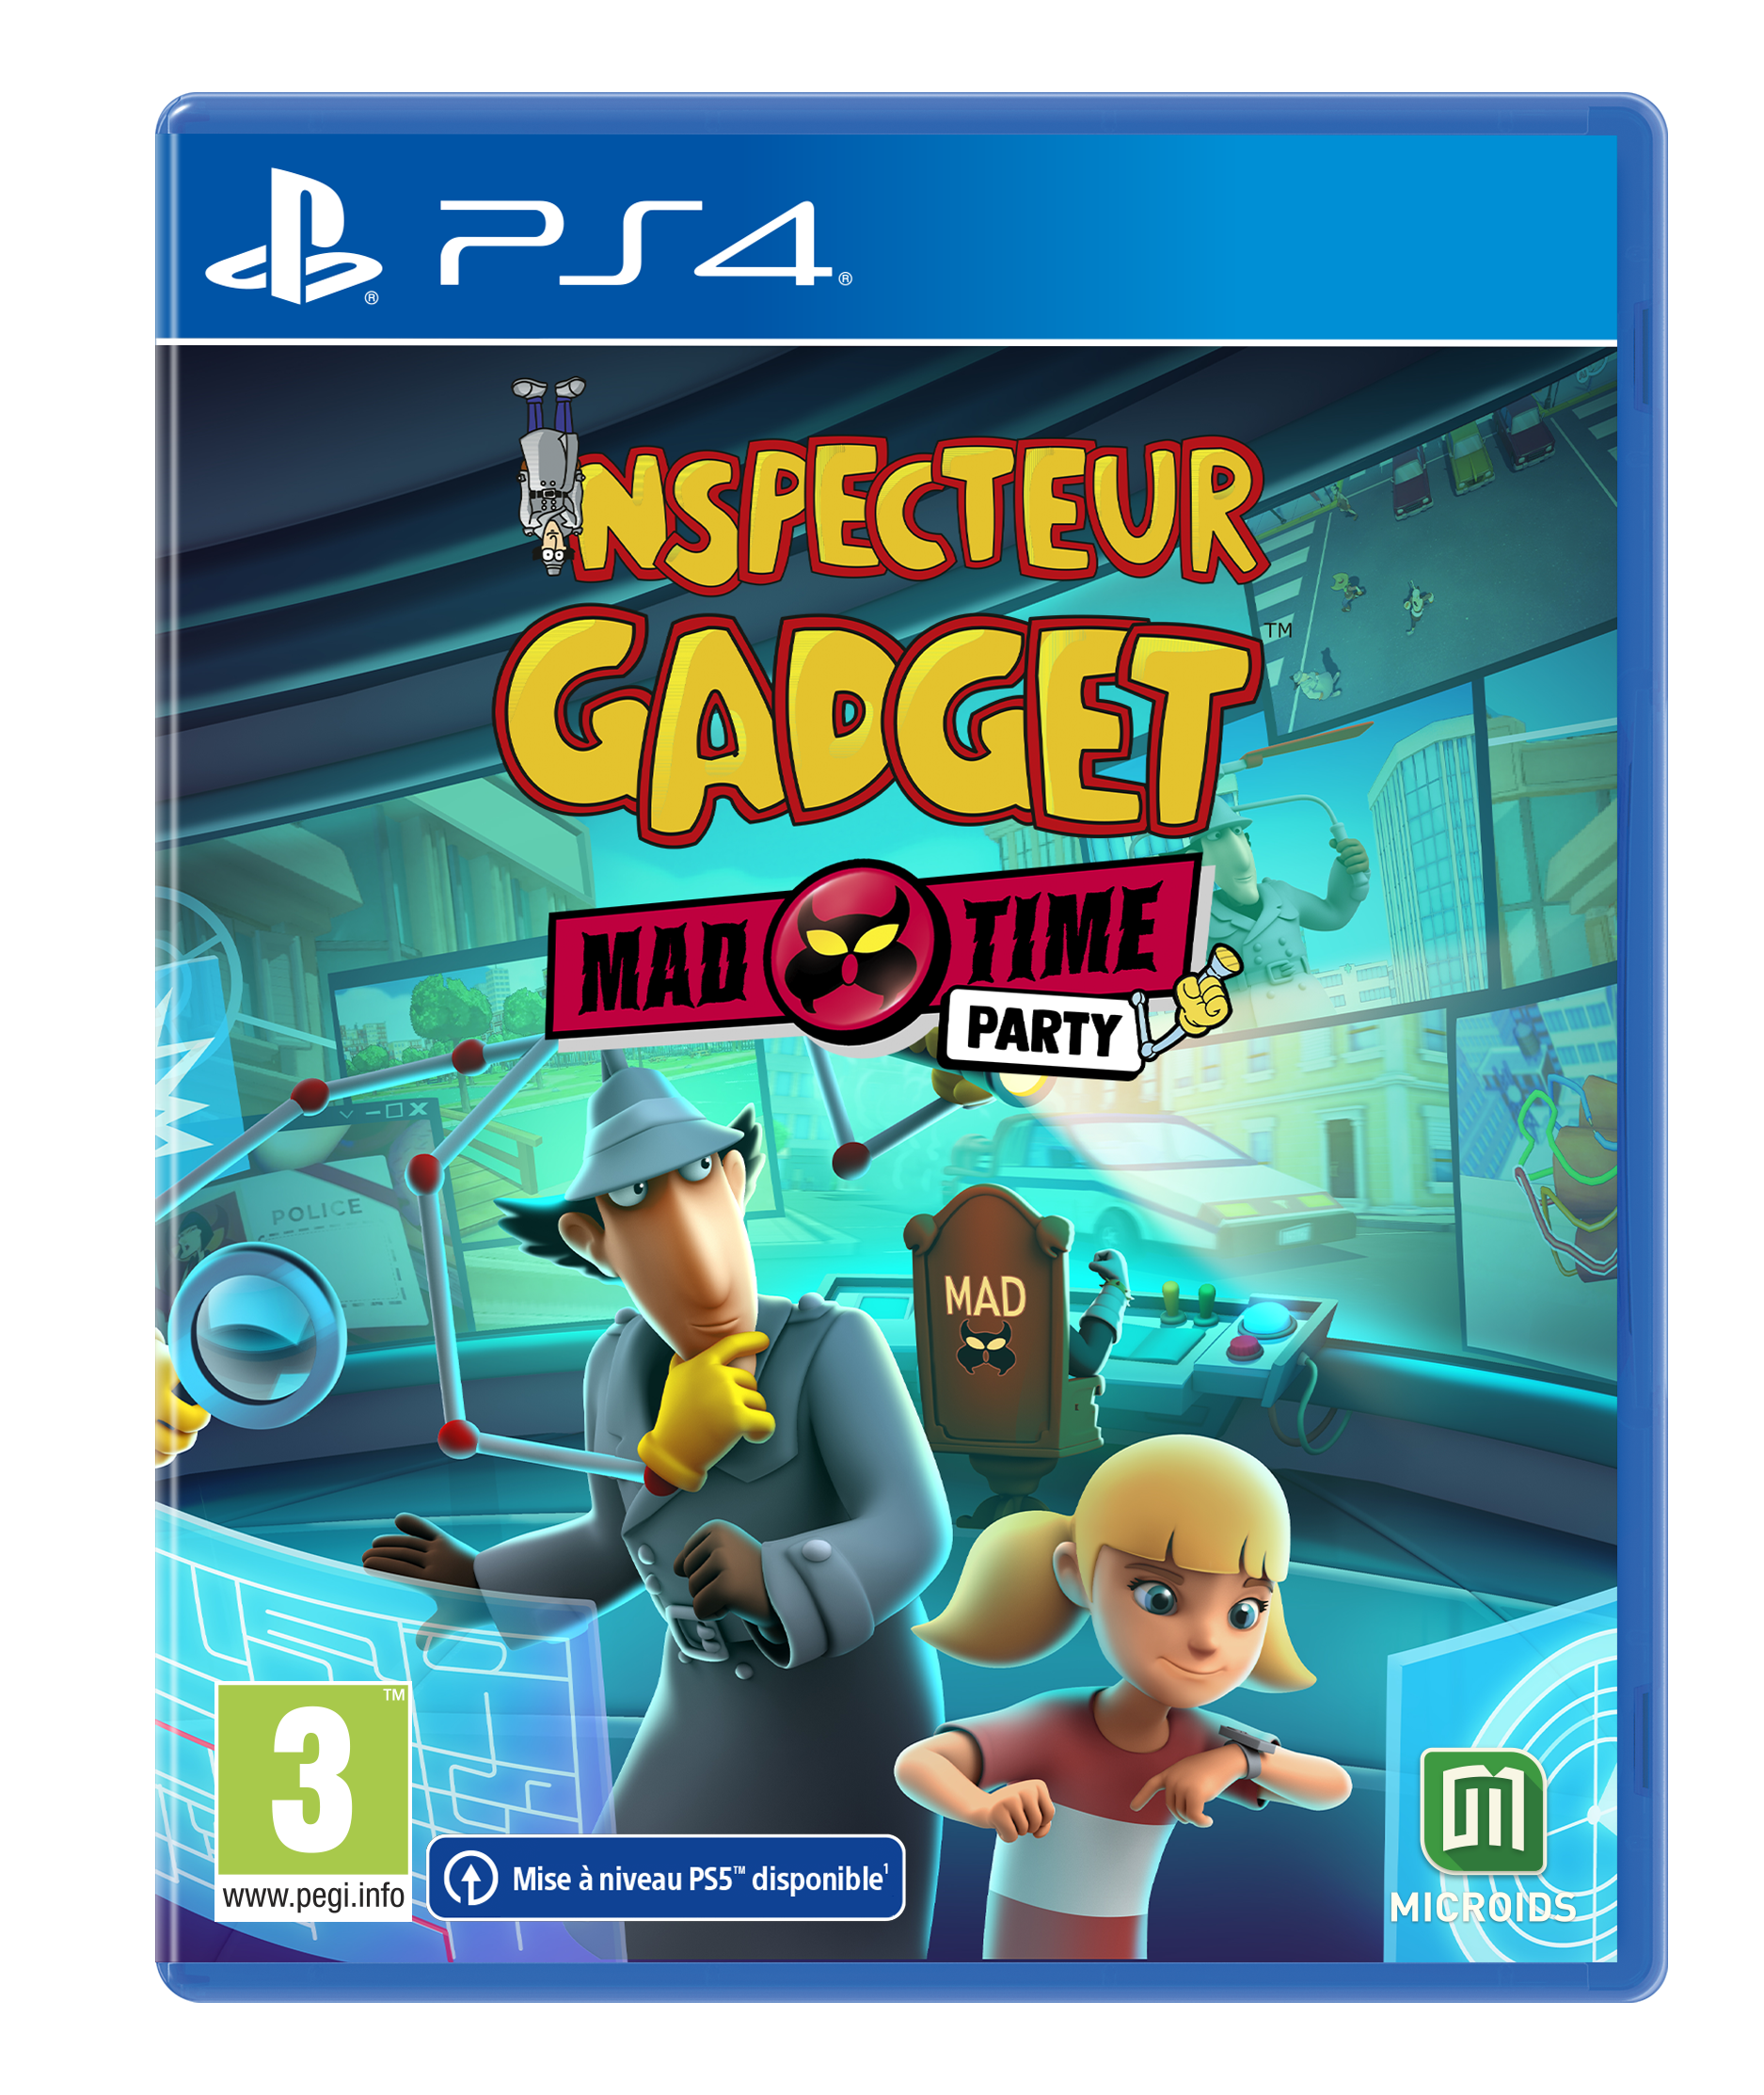 Un nouveau jeu "Inspecteur Gadget" chez Microïds